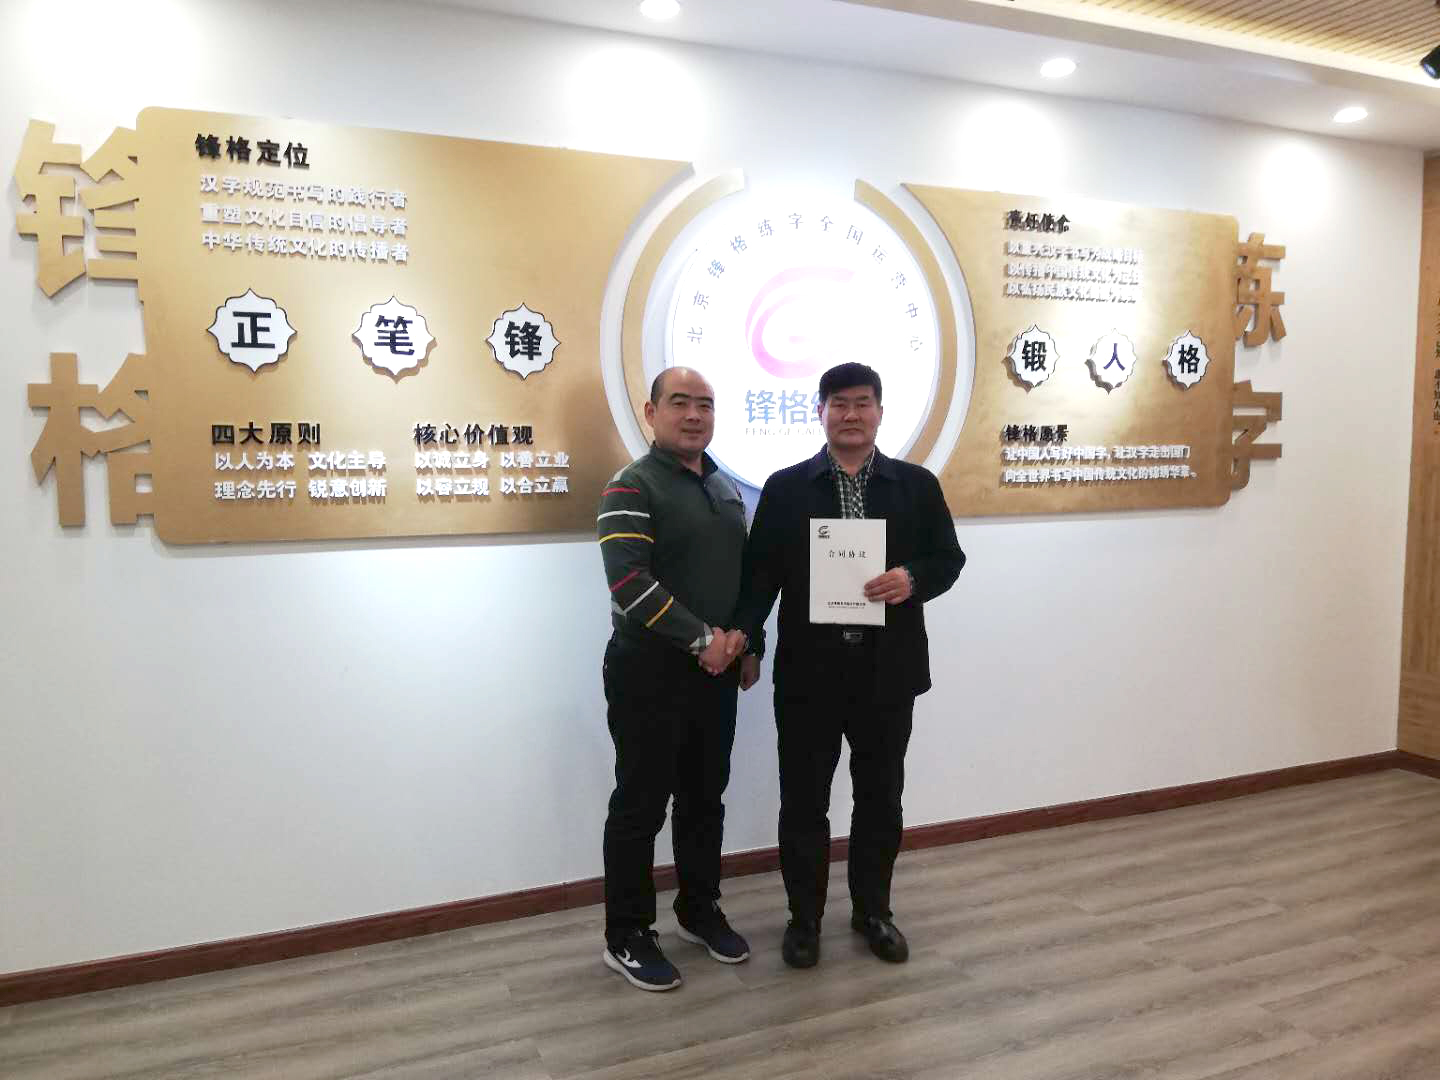 热烈祝贺潍坊高新区李老师成功加盟锋格练字